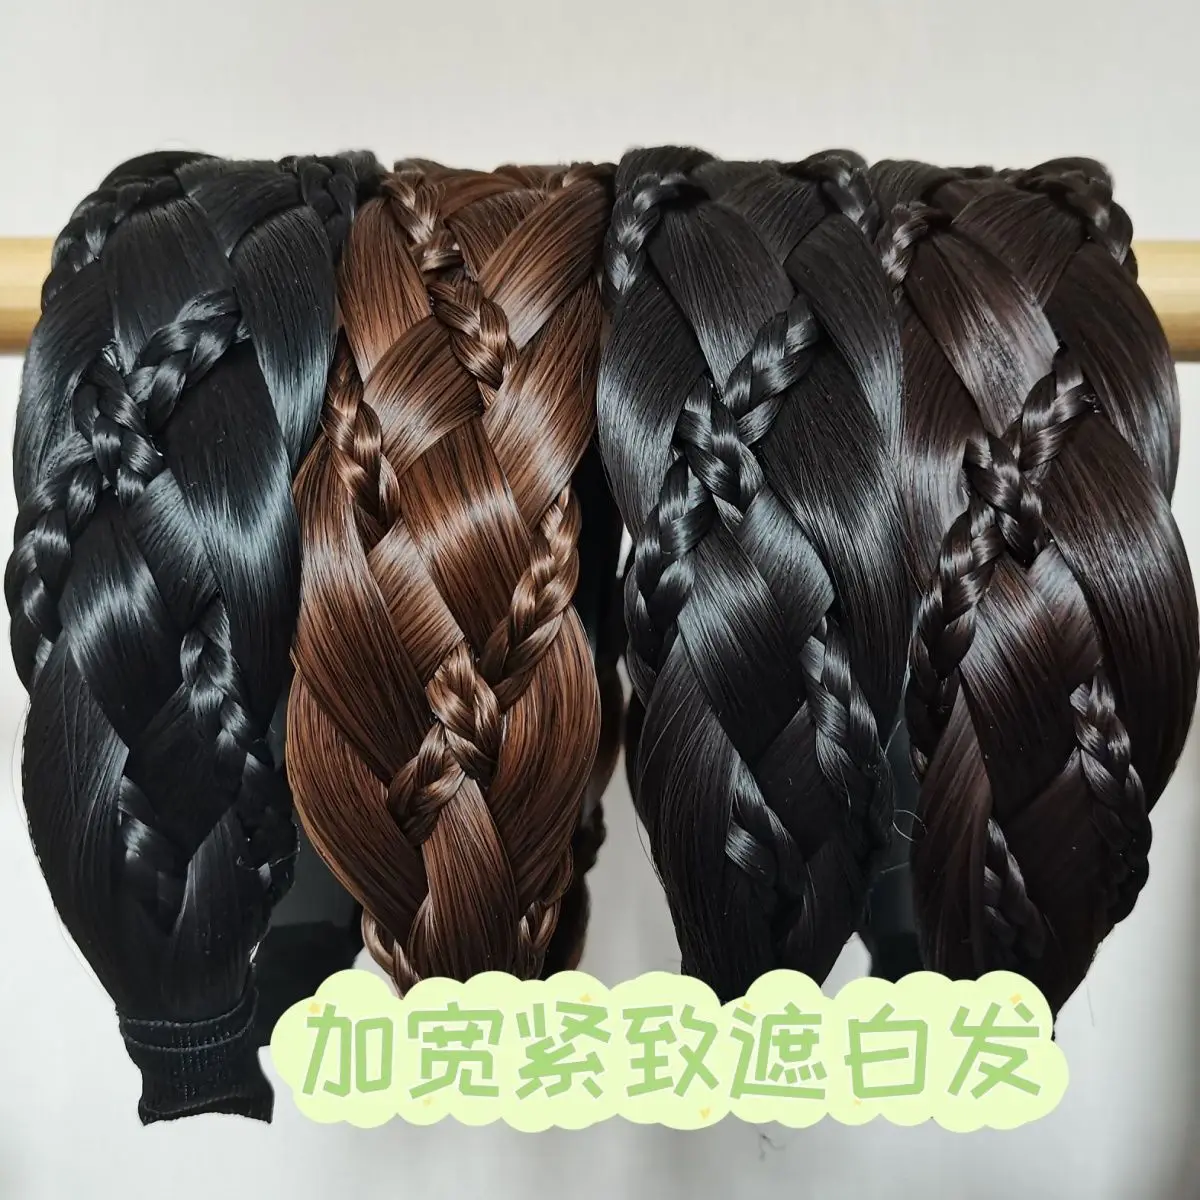 largo fishbone tranças hairbands artesanal retro cabeça